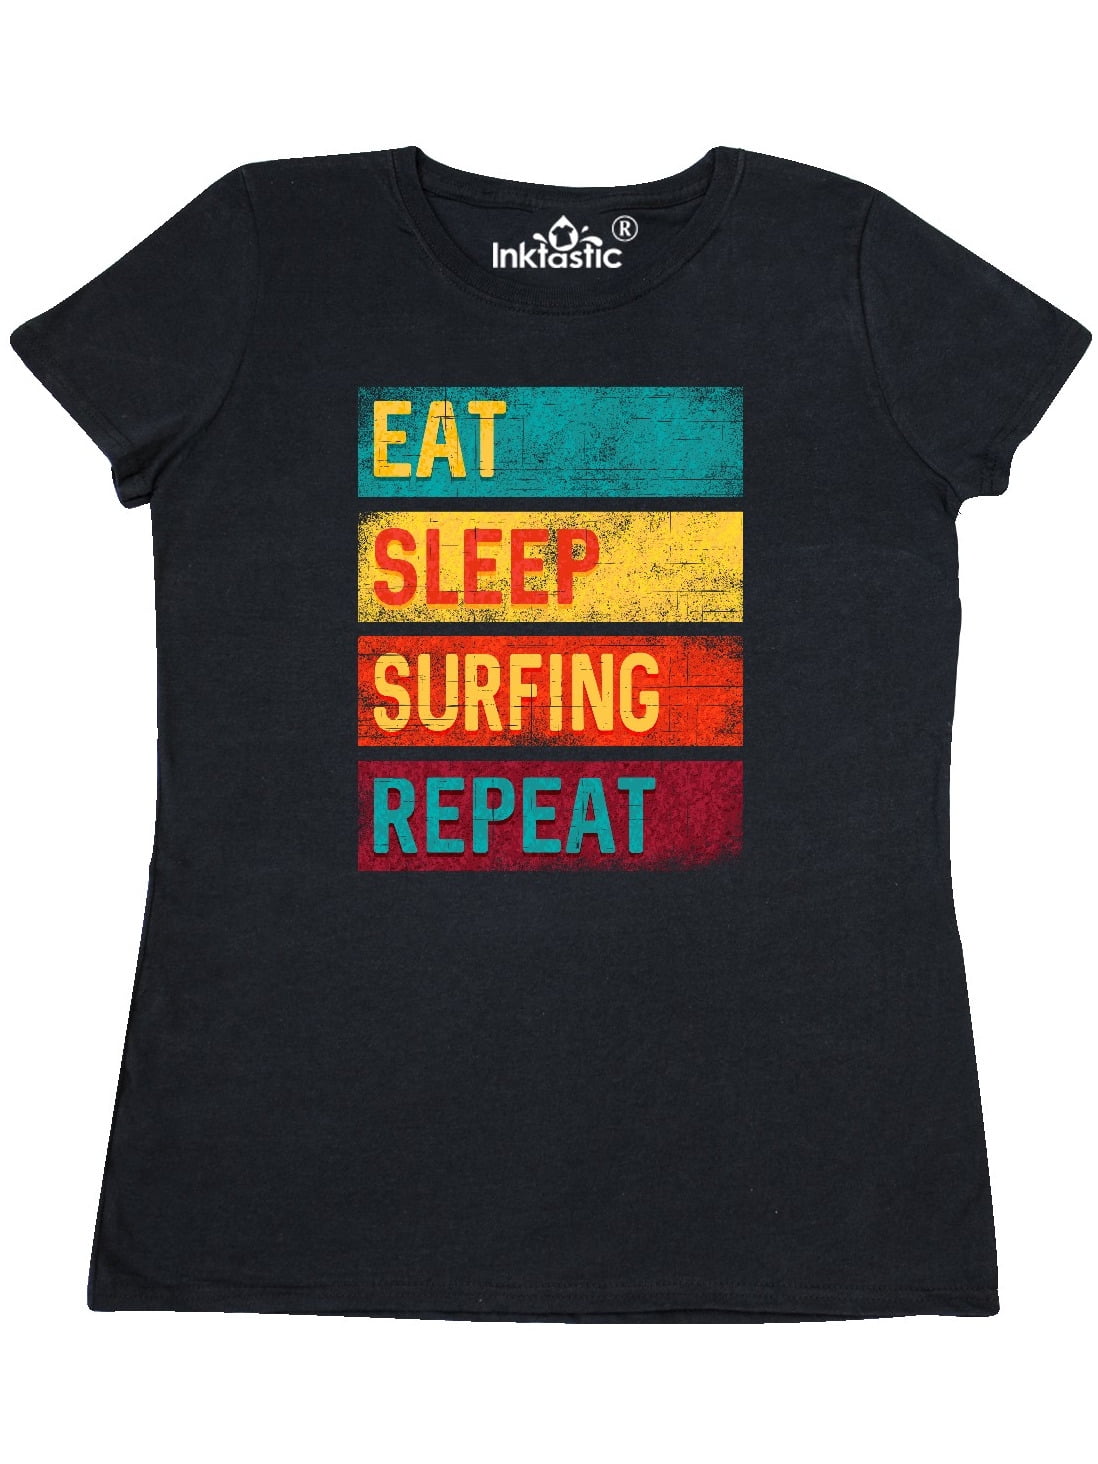 Eat Sleep Surf Black Adult T-Shirt 